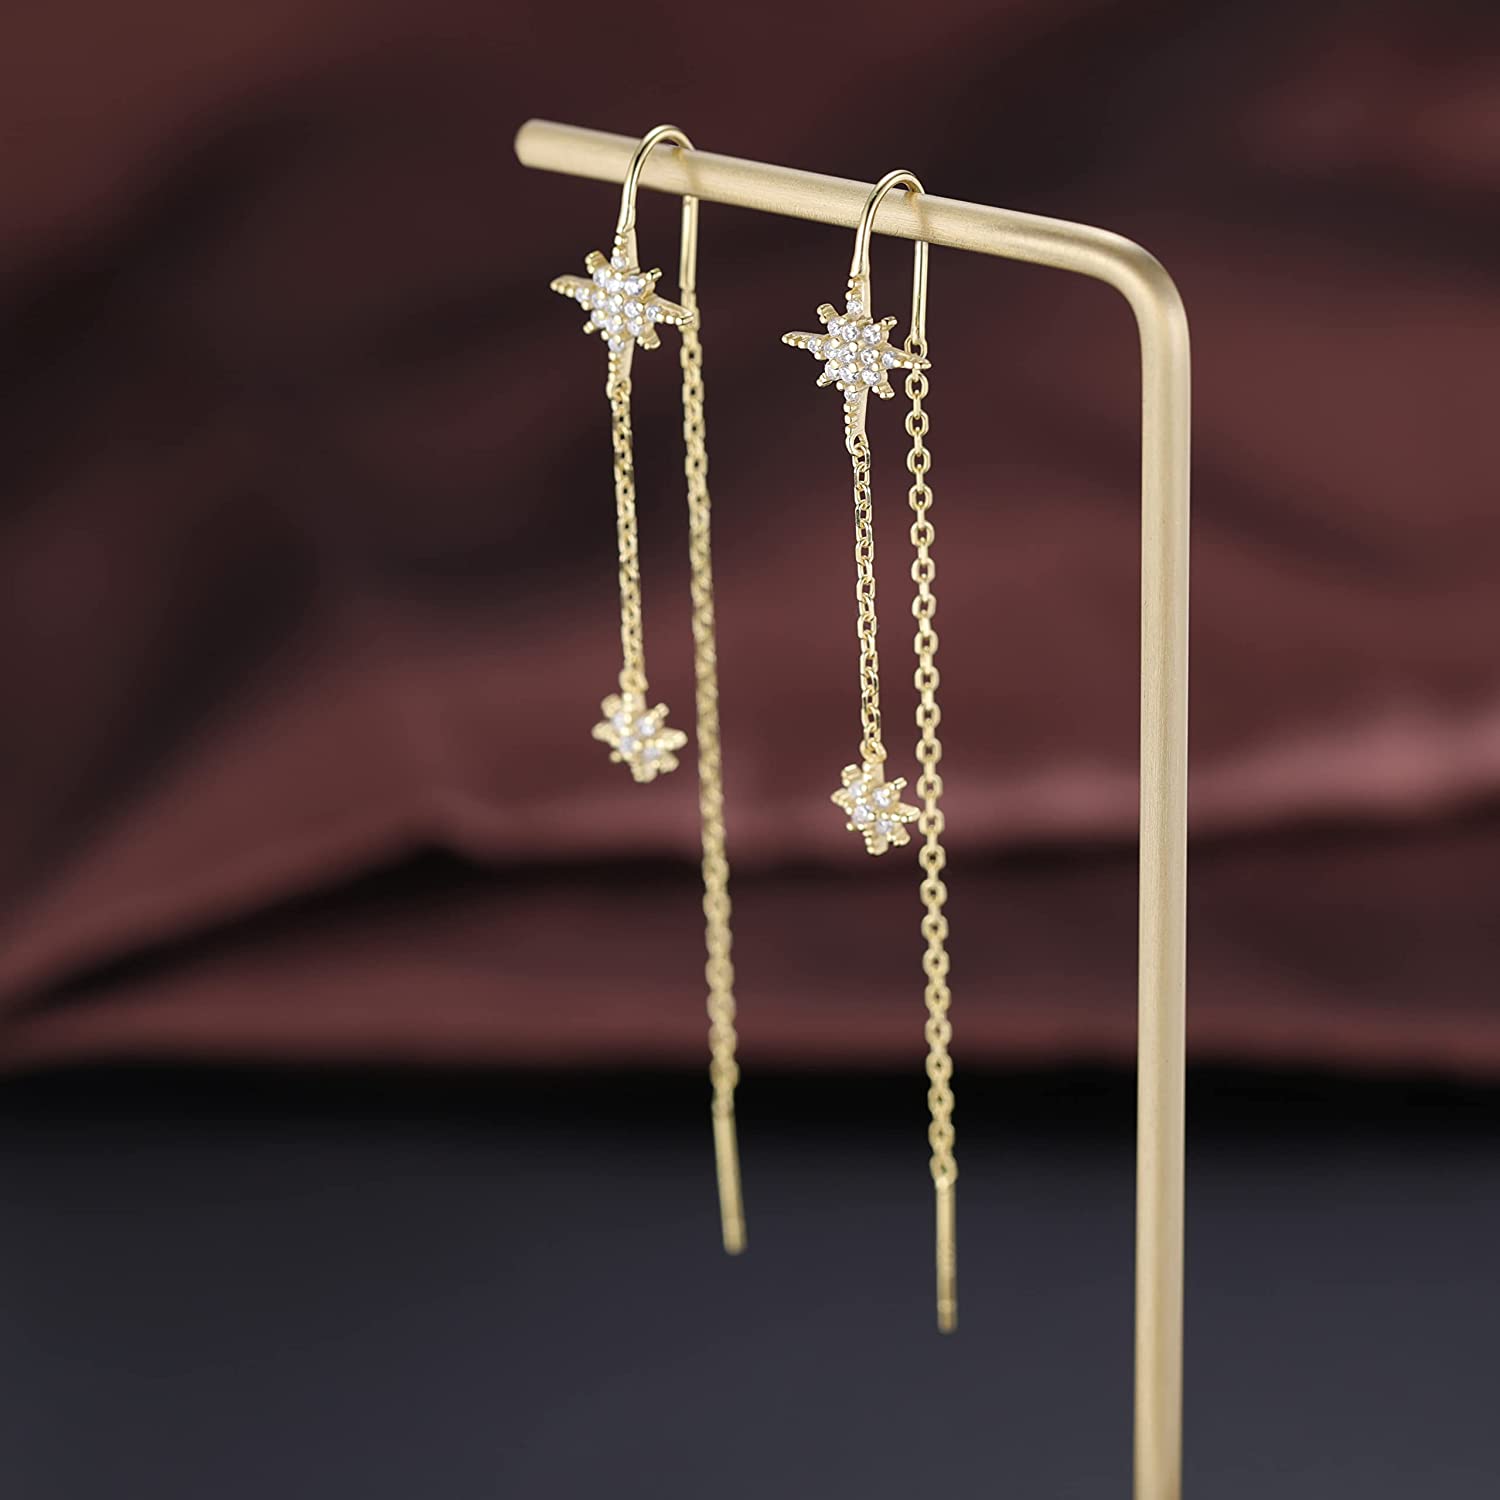 SLUYNZ 925 Sterling Silver Star Earrings Dangle Chain for Women Teen Girls Long Threader Earrings Tassel